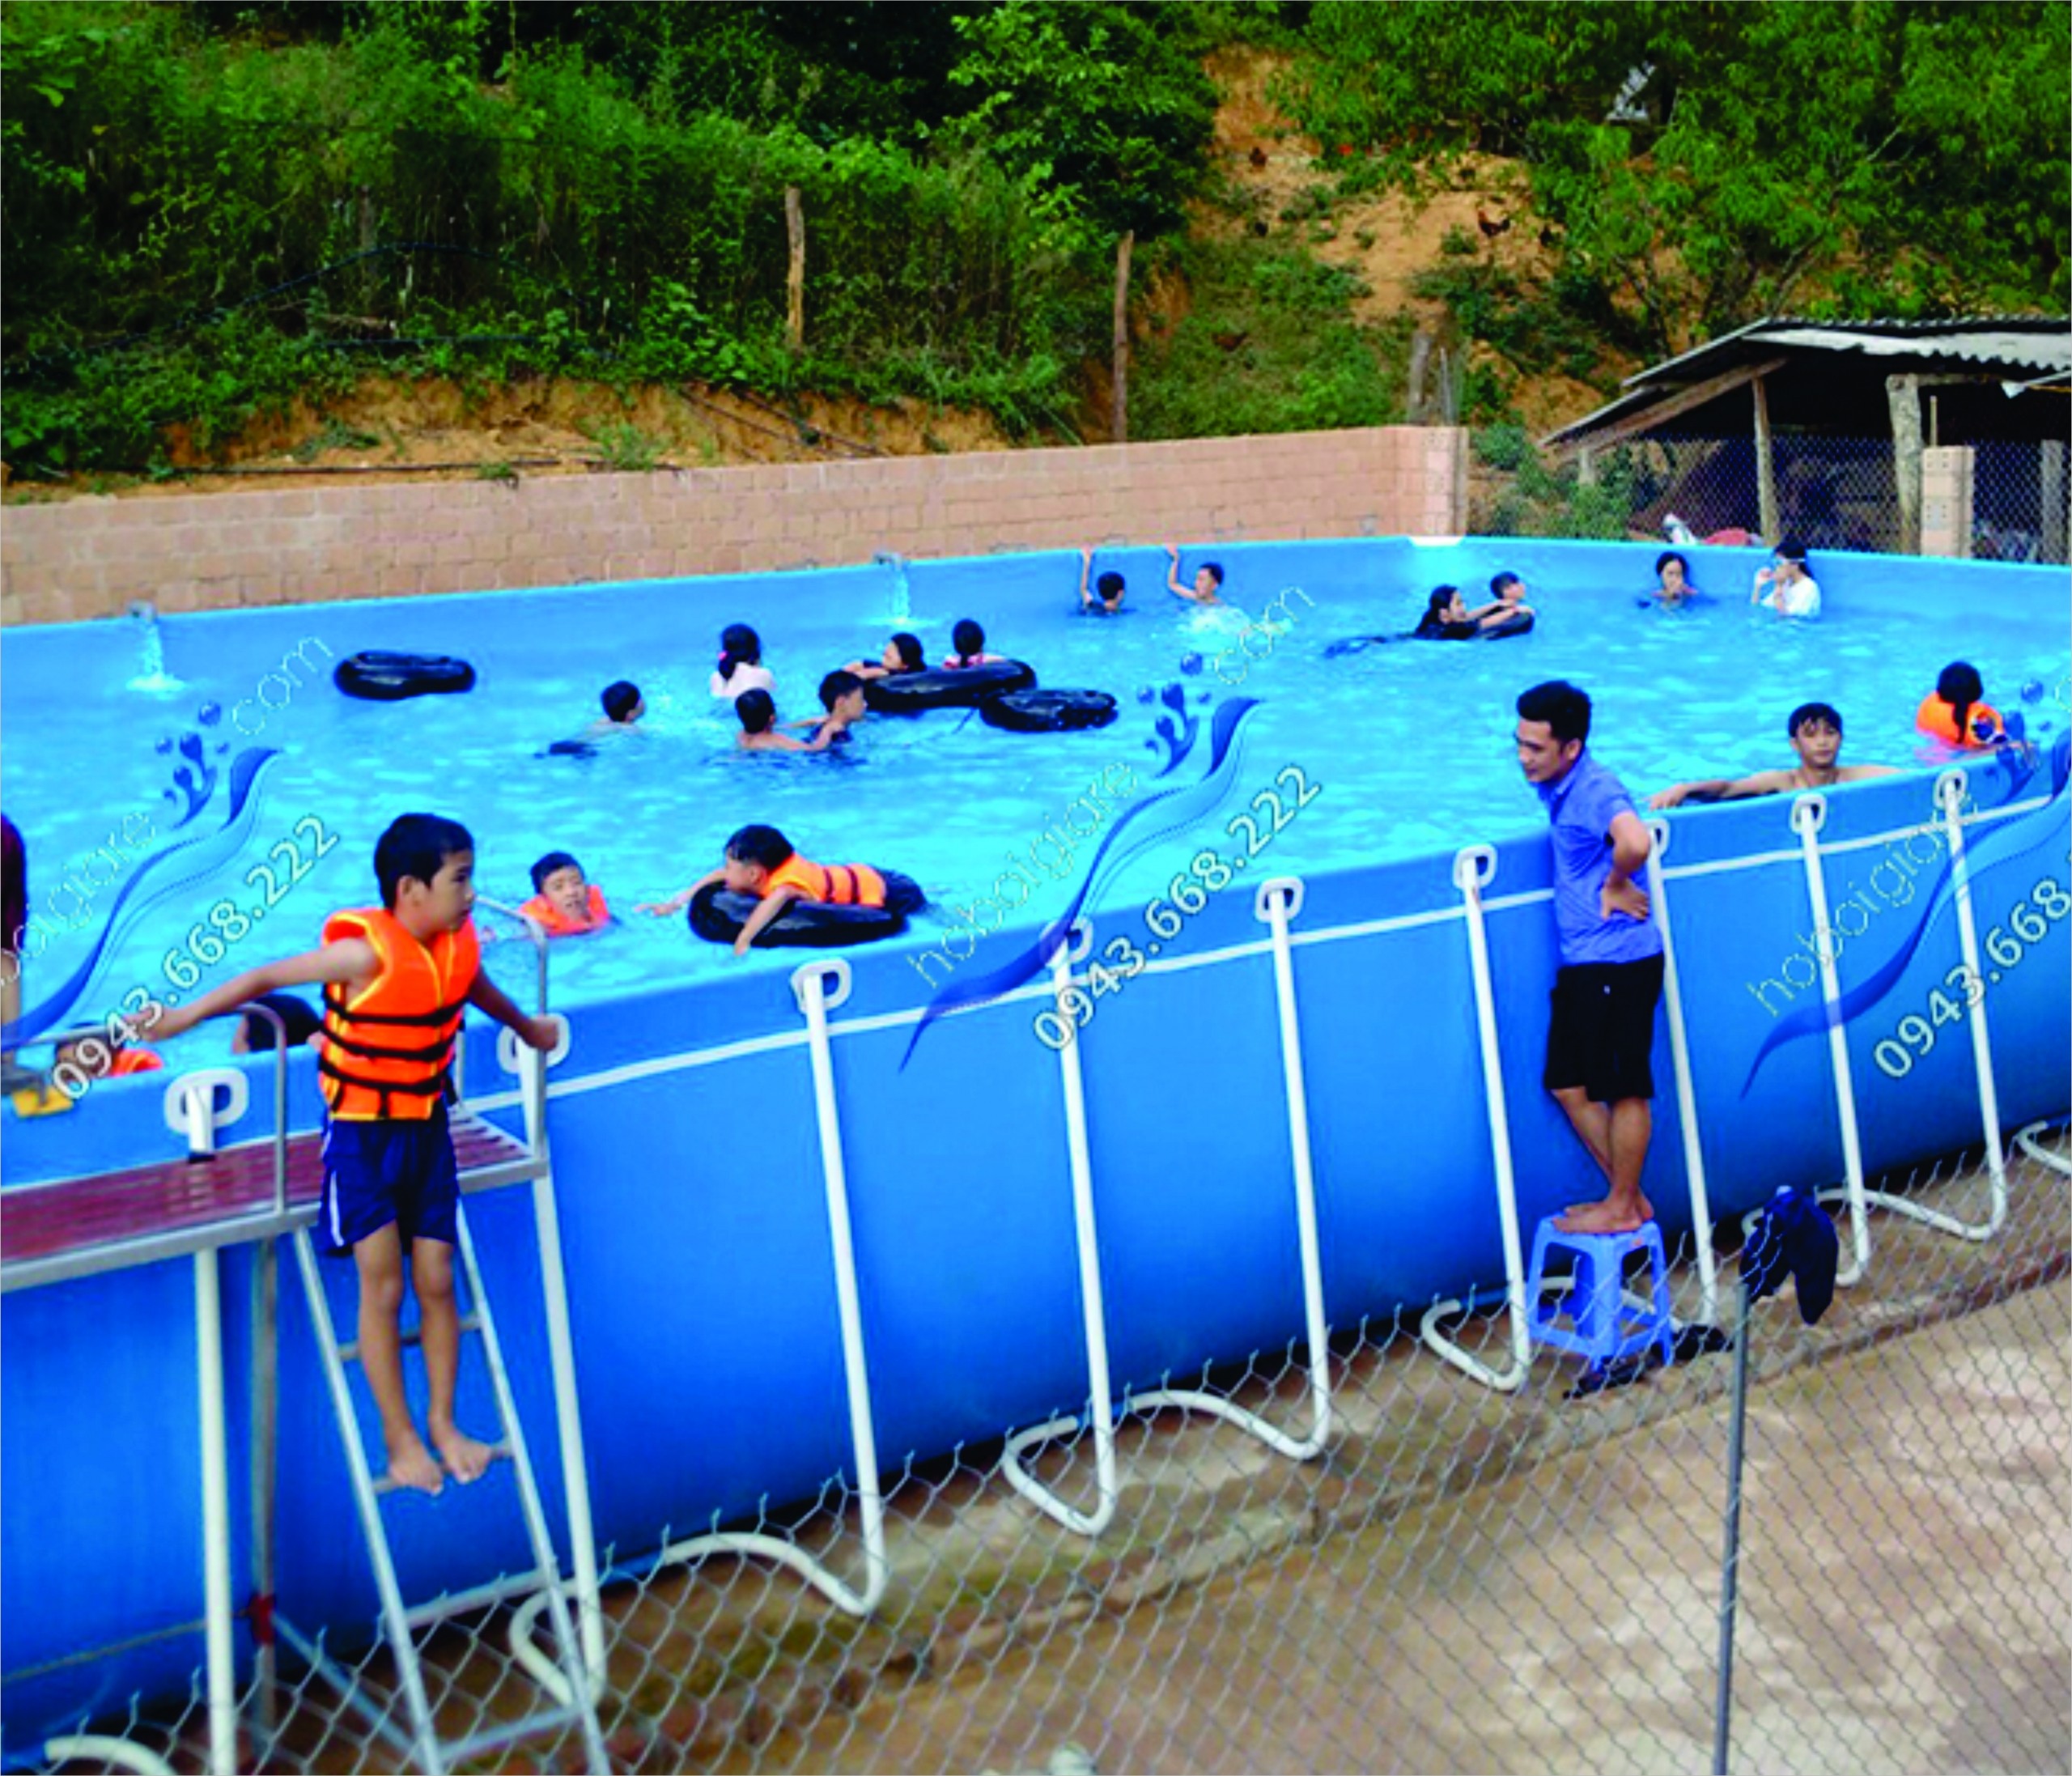 Cách Làm Bể Bơi Khung Kim Loại: Bí Quyết Tự Tạo Oasis Tại Nhà